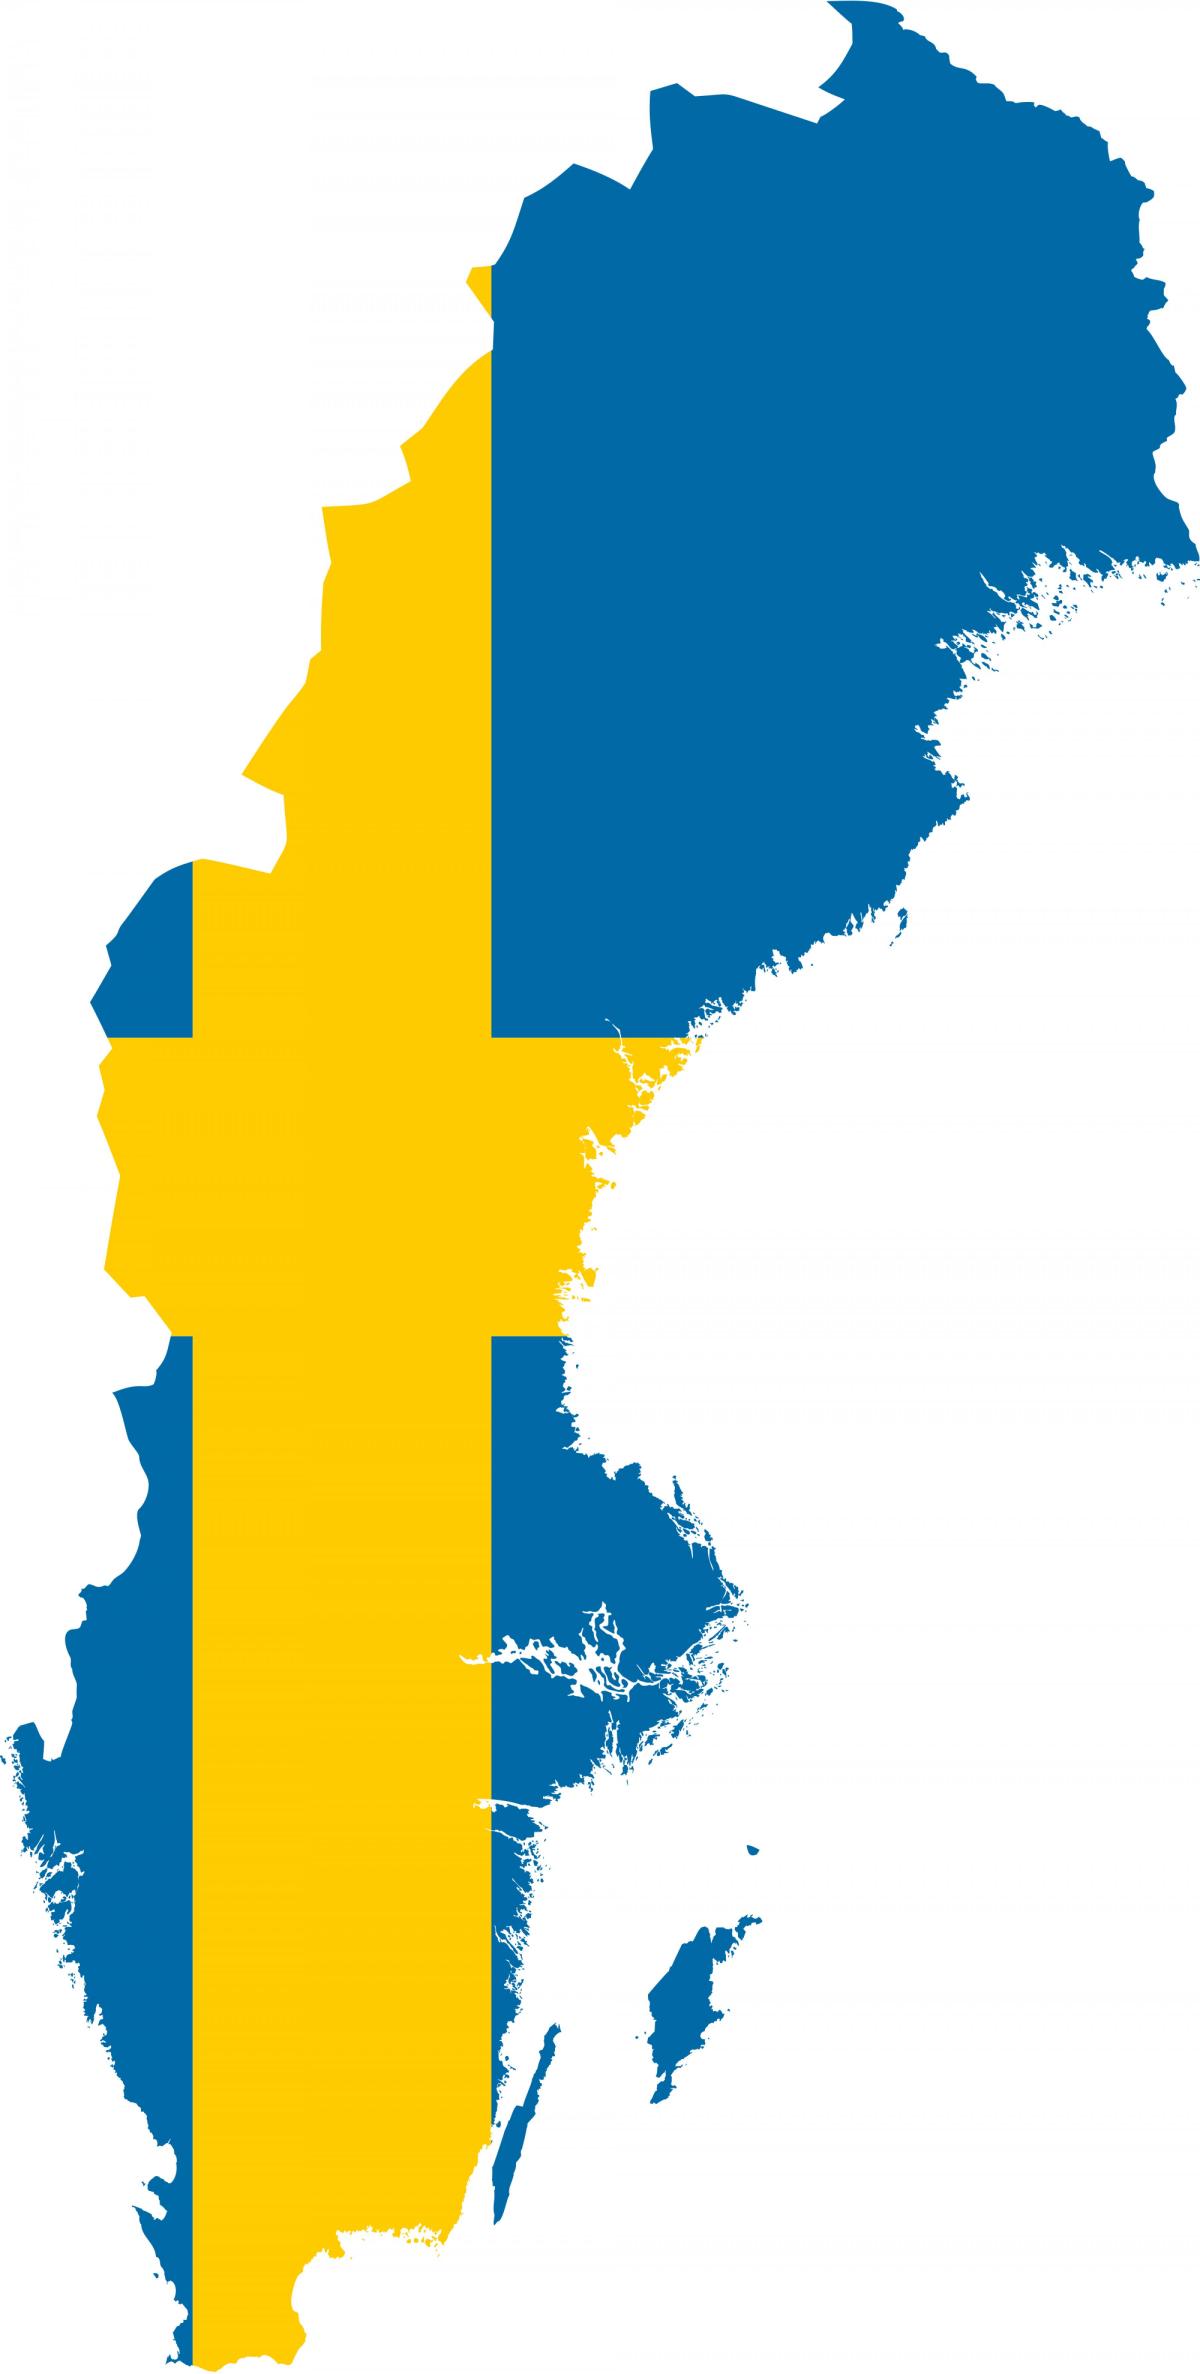 Sweden map flag